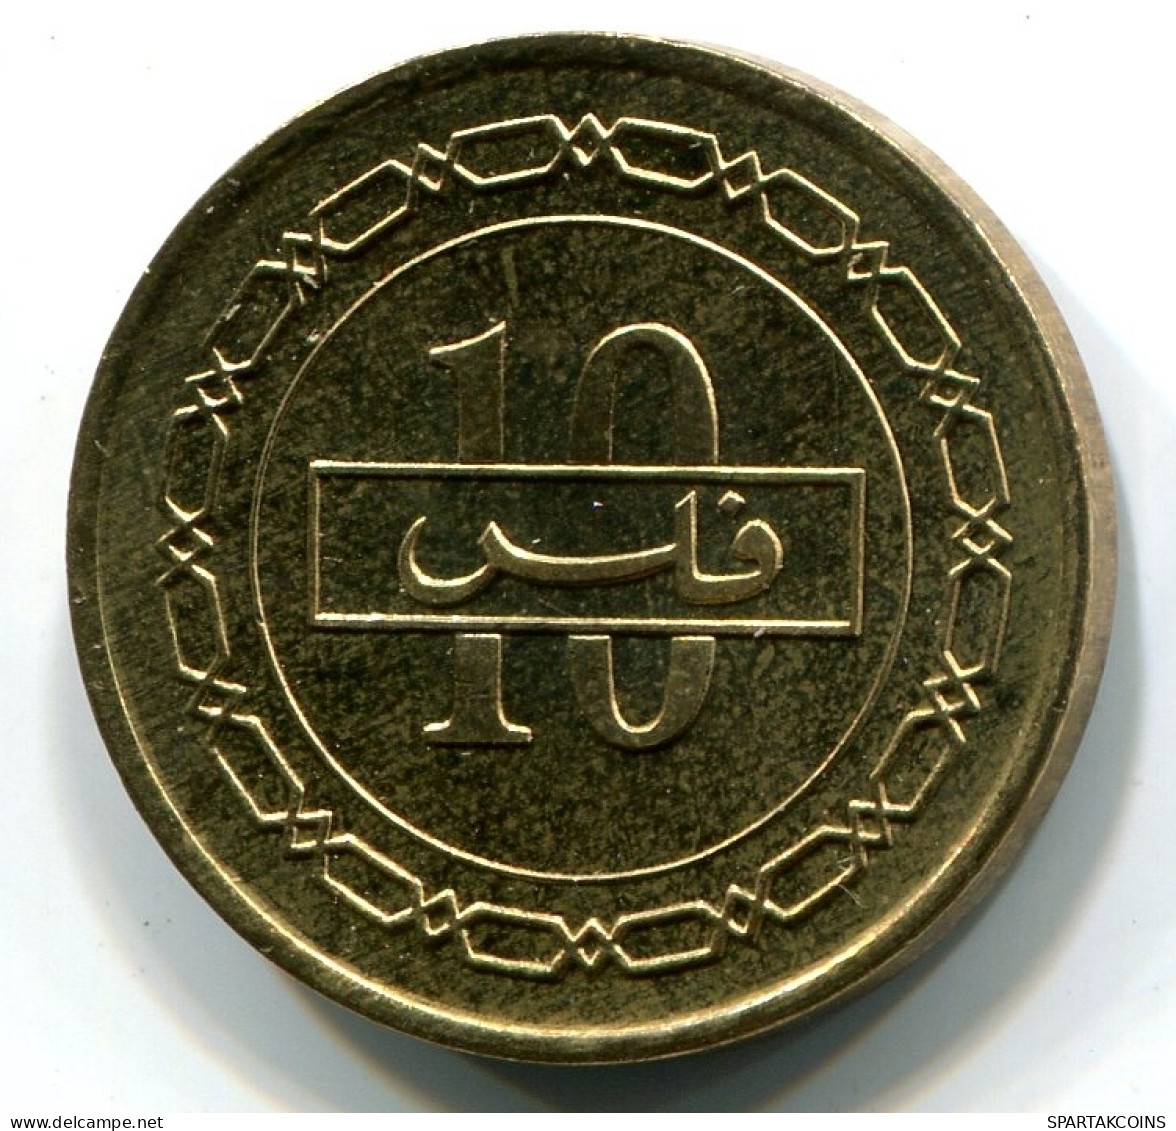 10 FILS 2000 BAHREIN BAHRAIN Islámico Moneda UNC #W10977.E - Bahrain